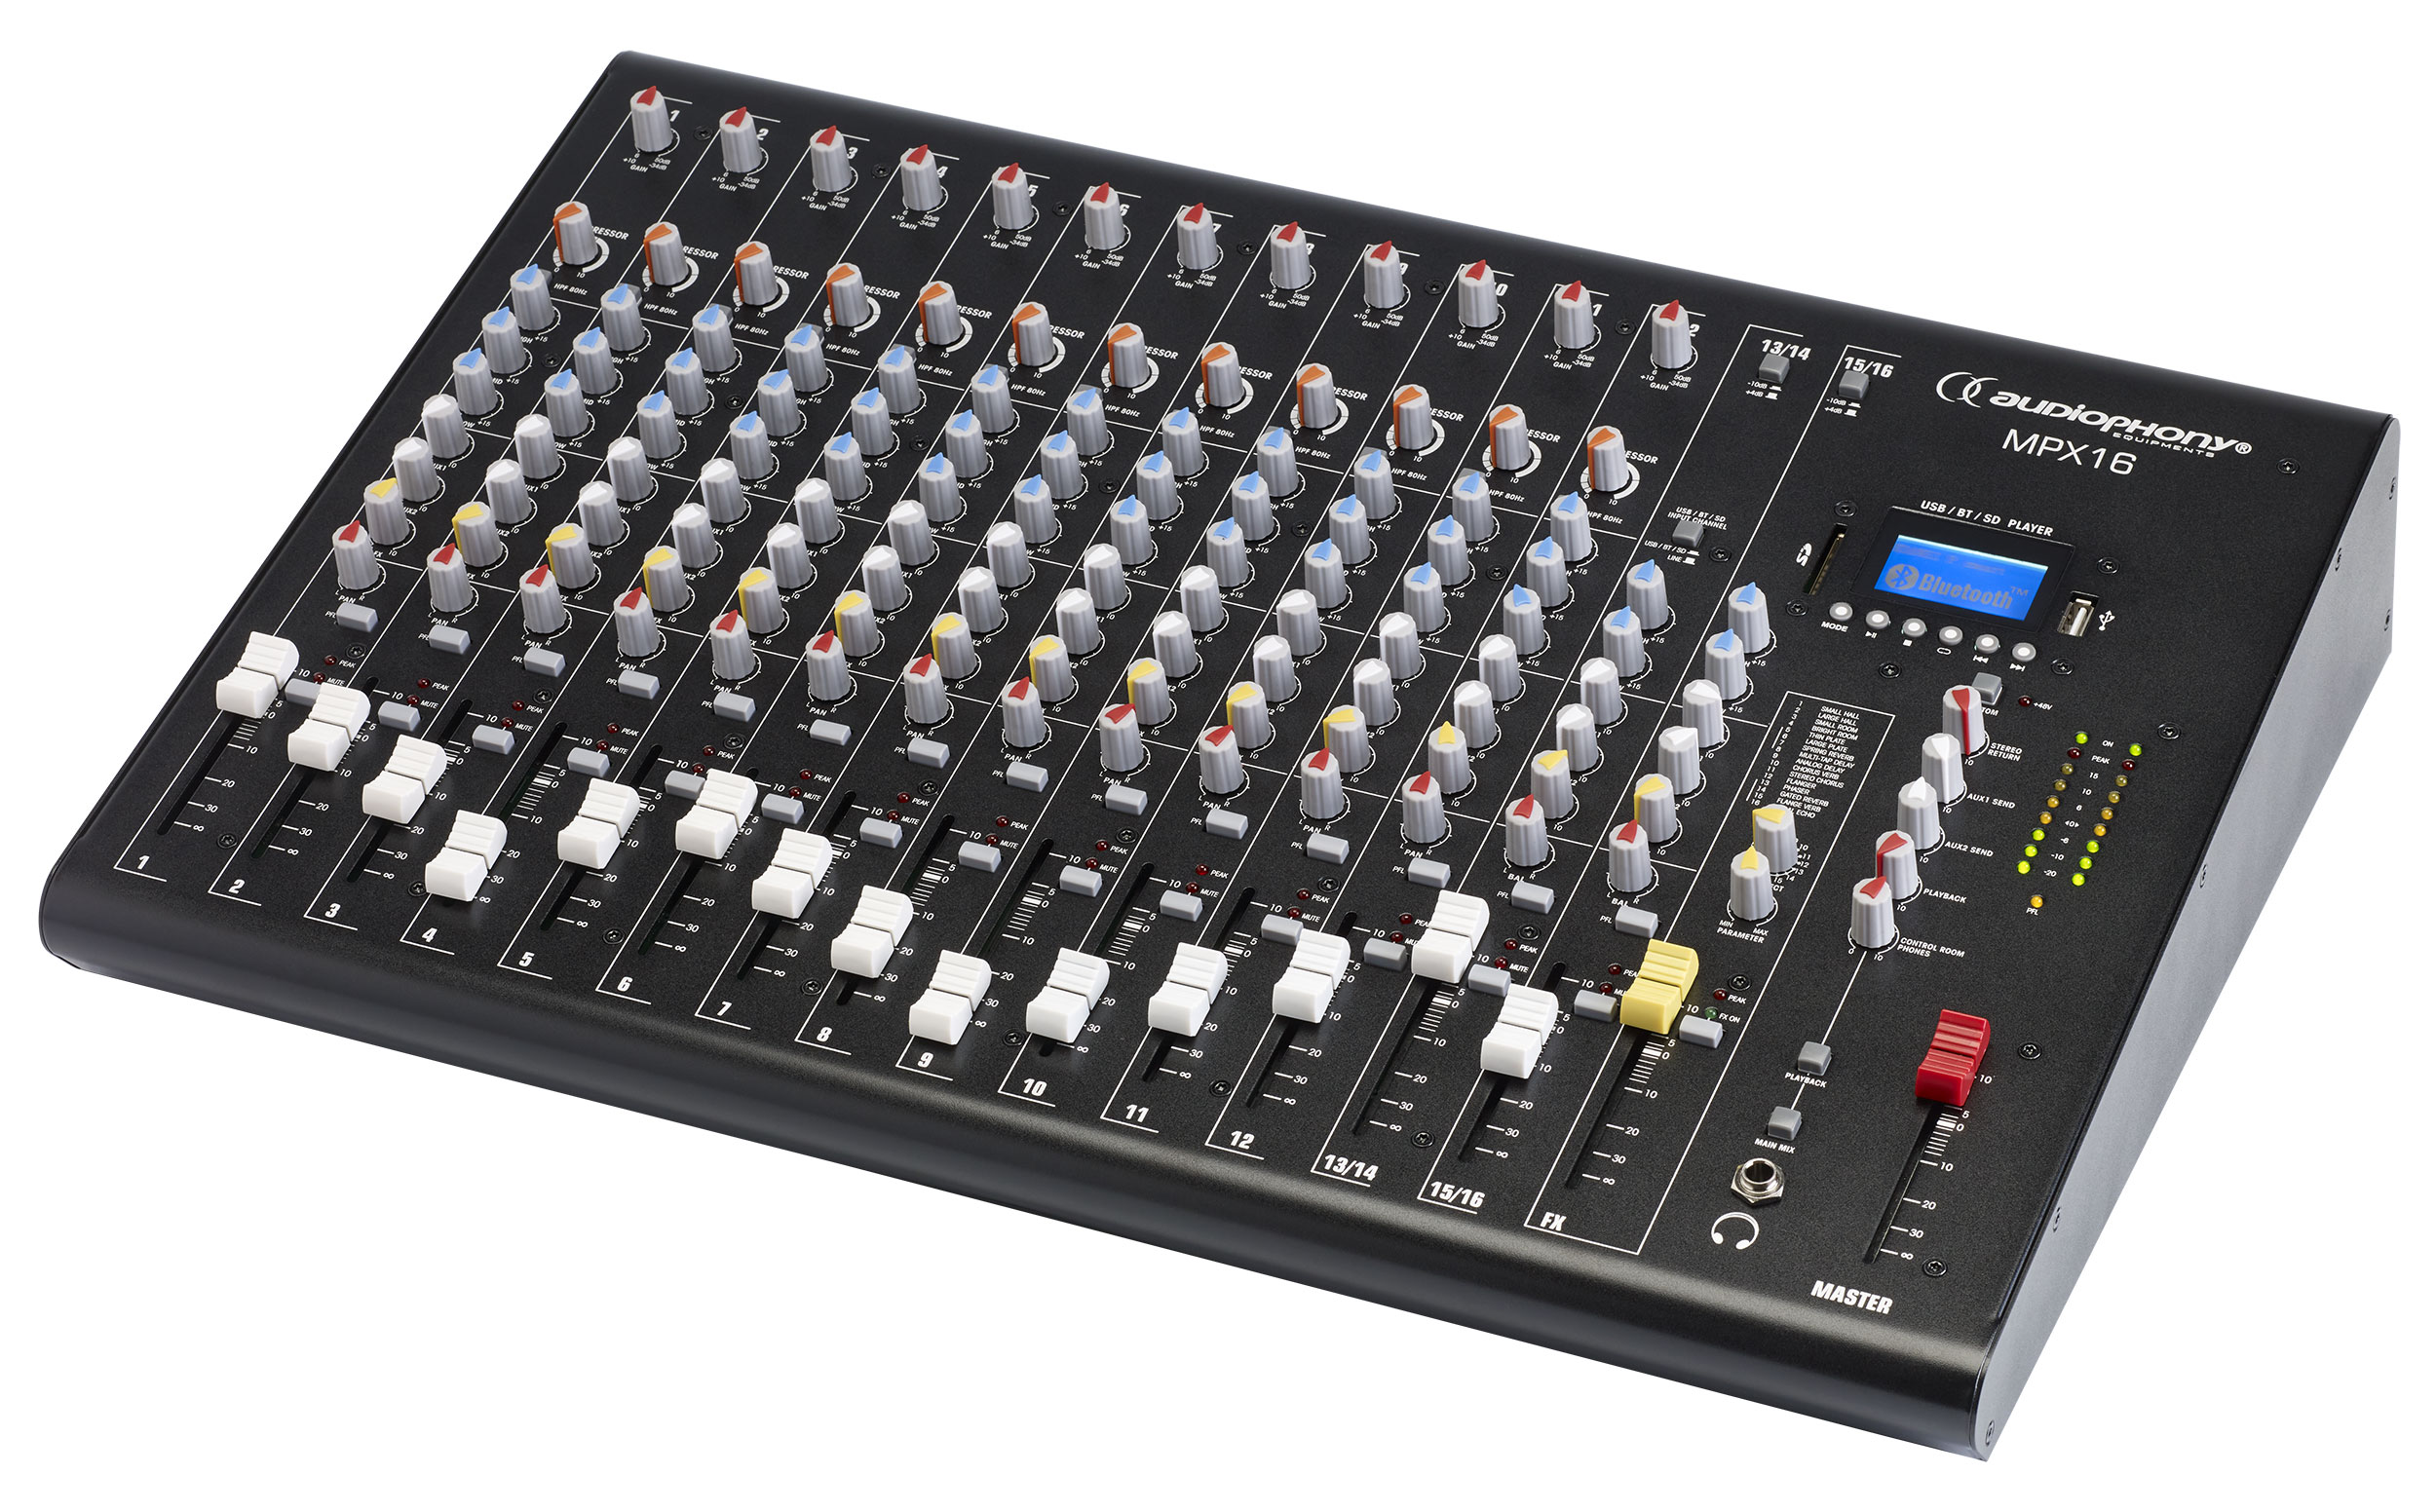 console de mixage audiophony mpx8 8 canaux avec effets et